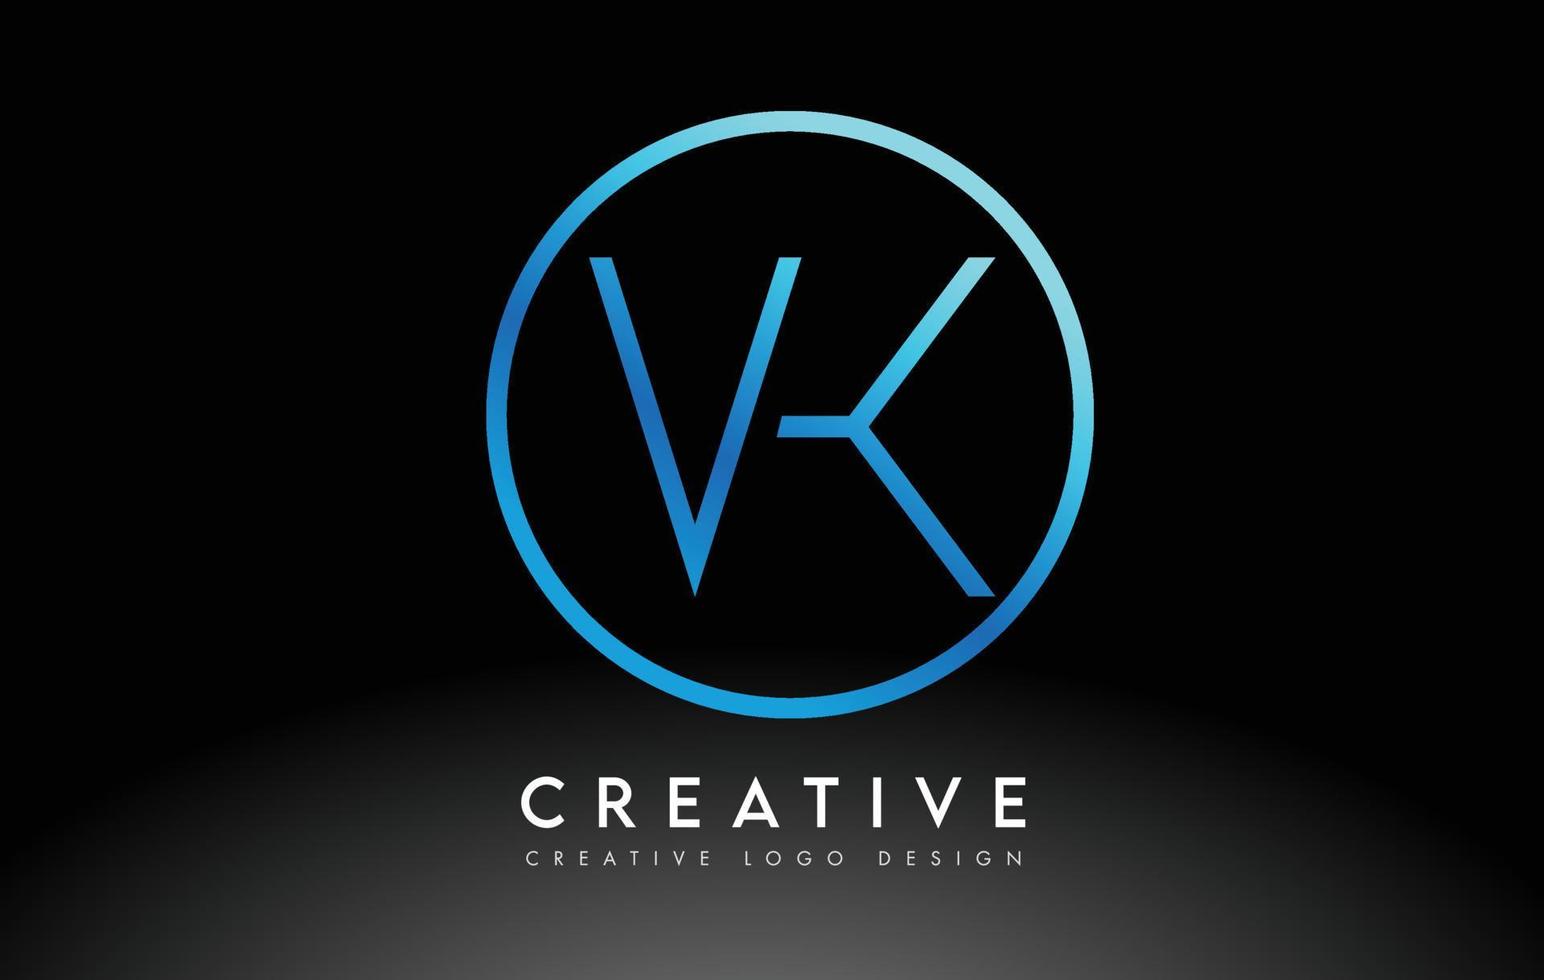 design de logotipo de letras vk azul neon slim. conceito criativo de carta limpa simples. vetor